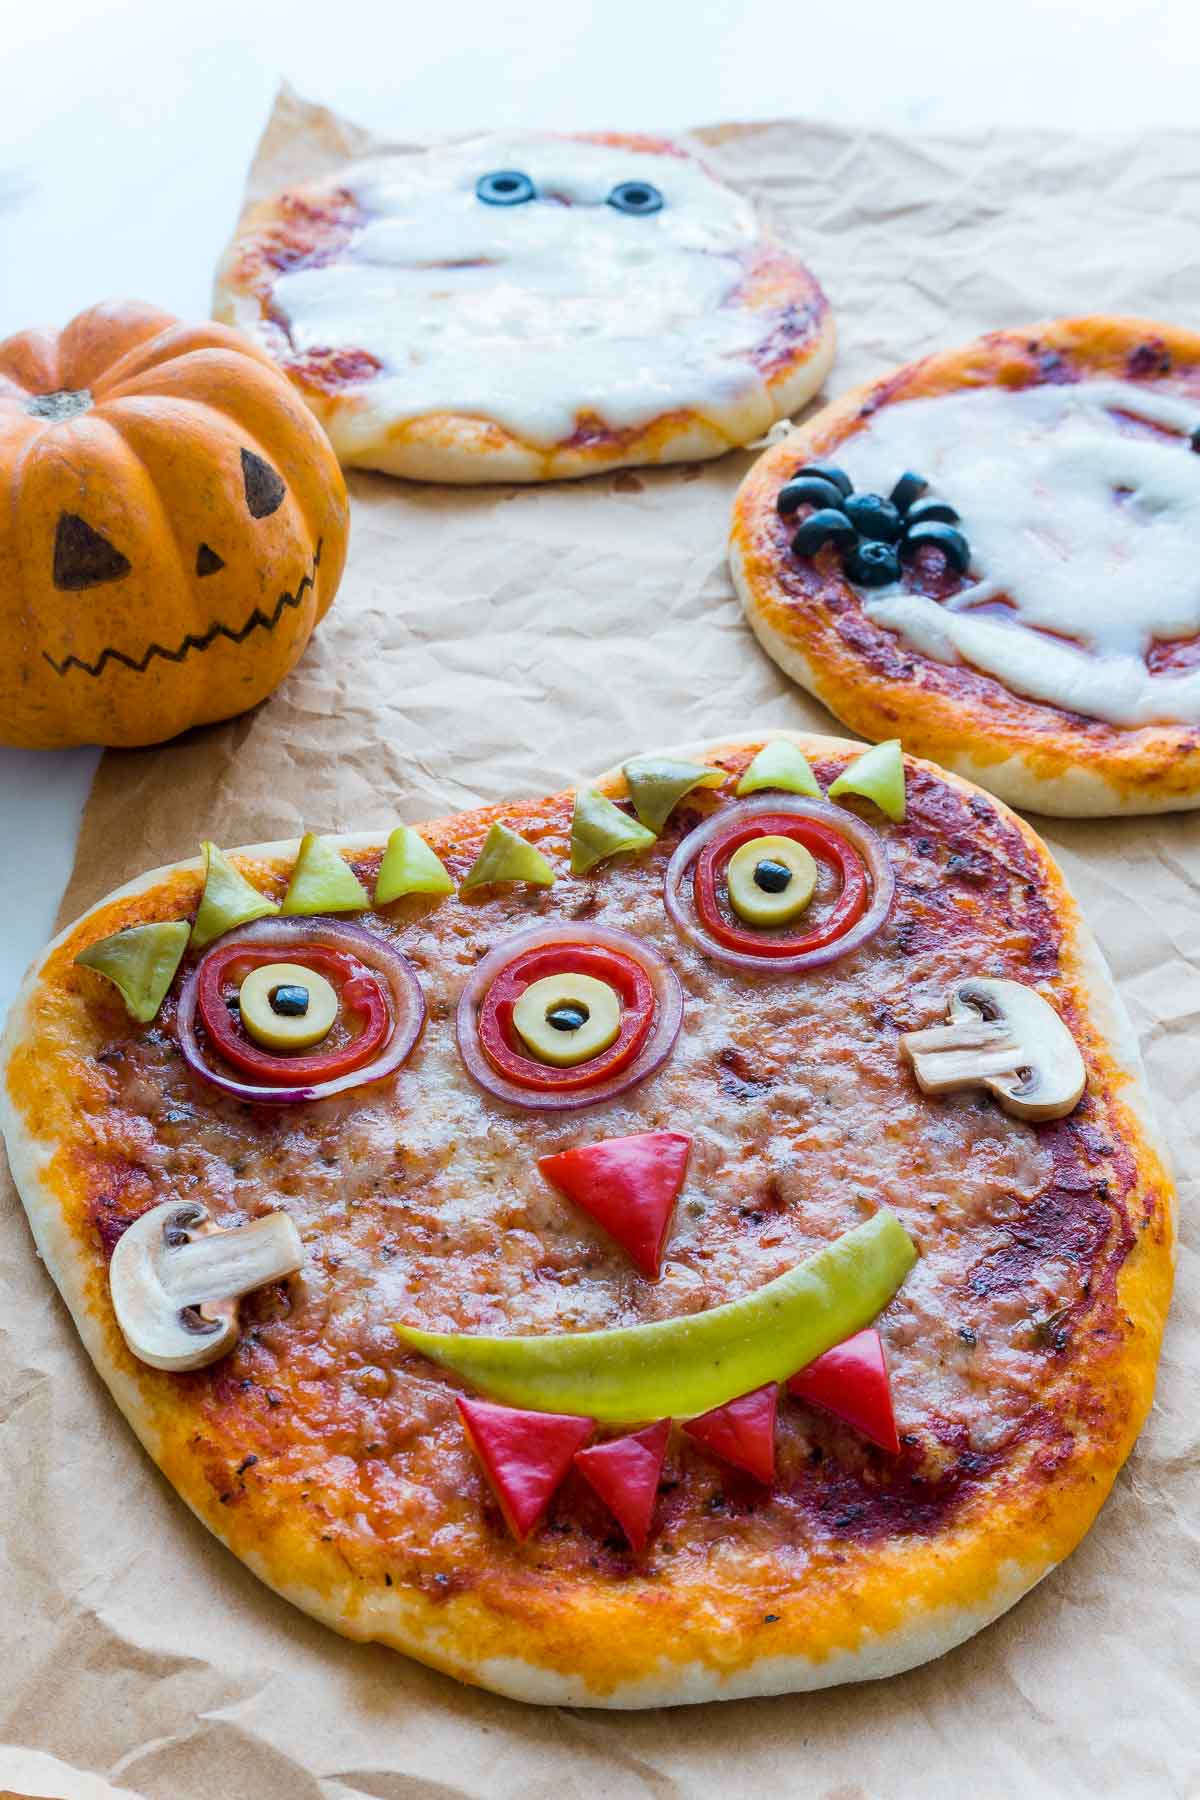 A halloween pizza that looks like Frankenstein's monster.